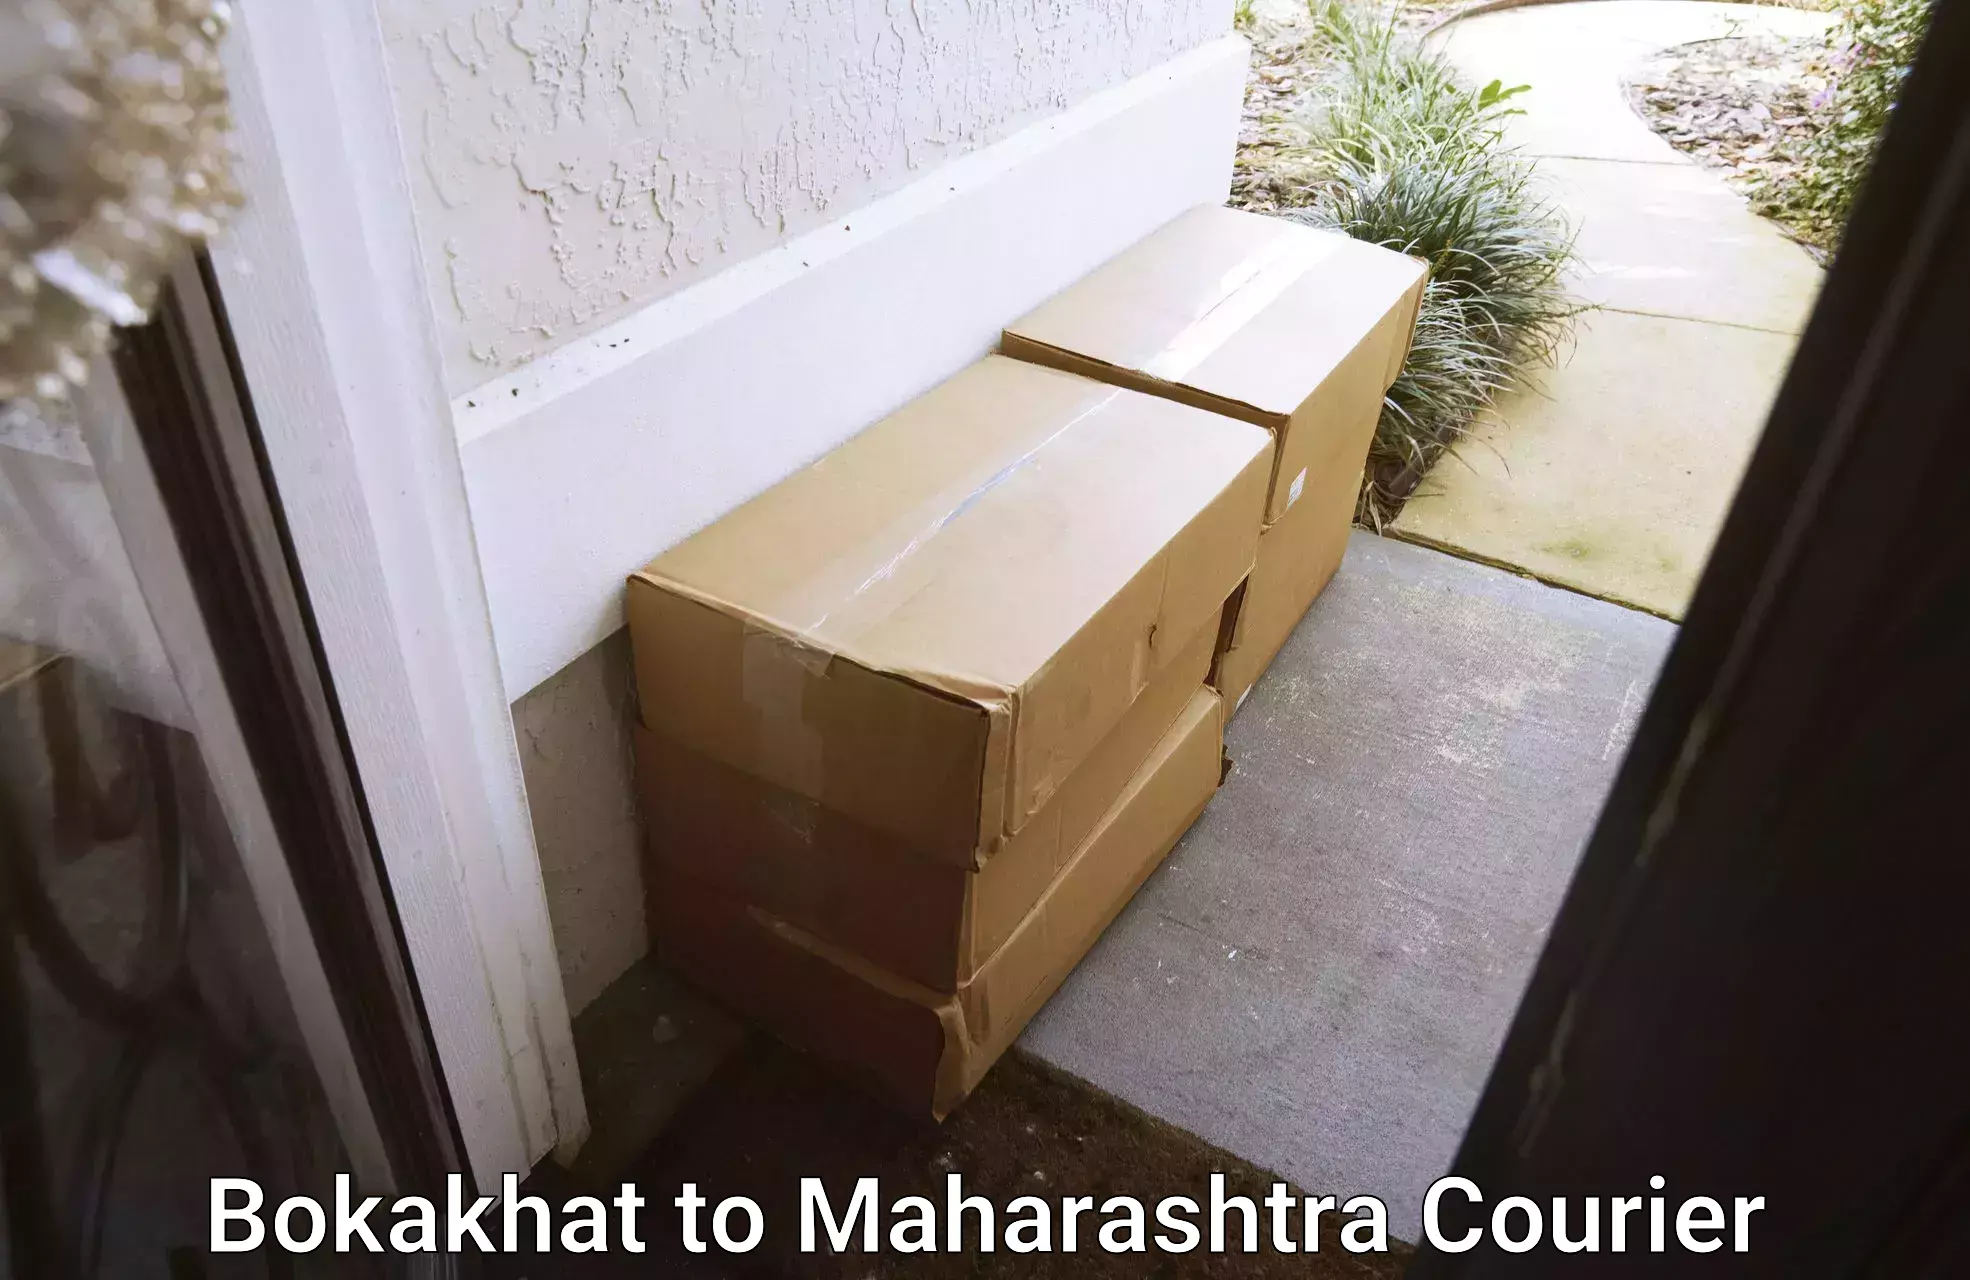 Custom courier packaging in Bokakhat to Karjat